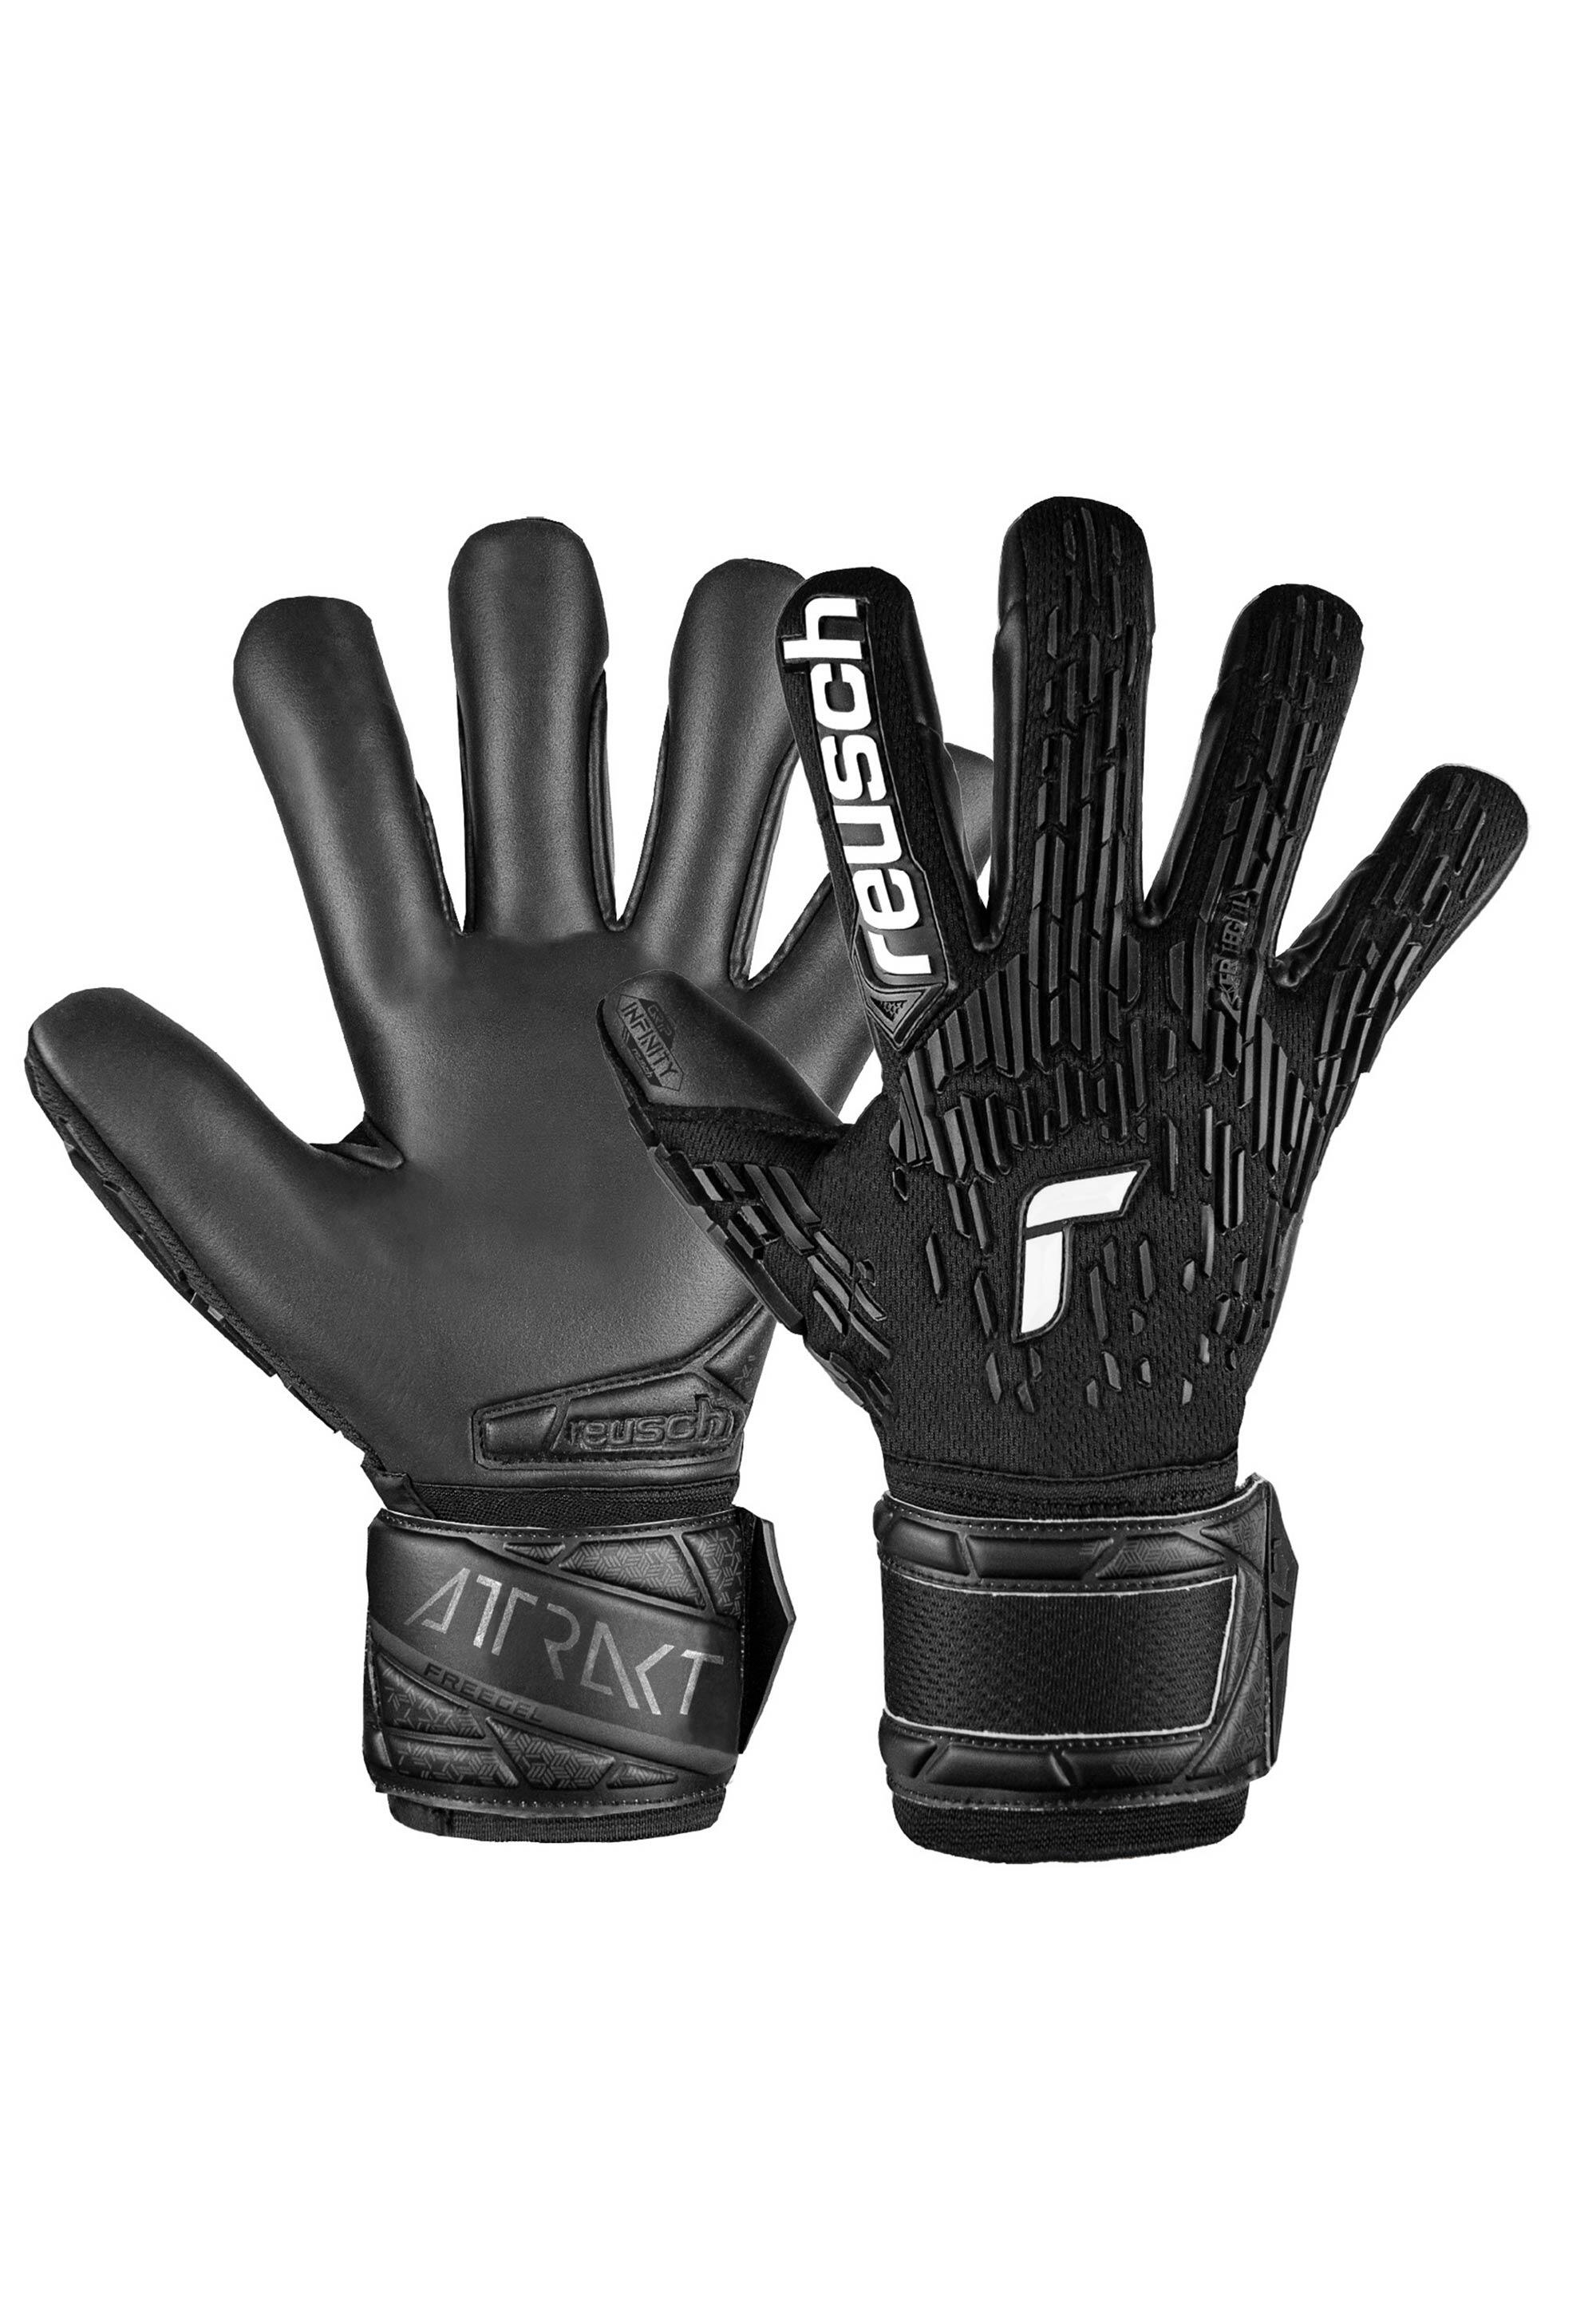 Reusch Attrakt Freegel Infinity Finger Support Goalkeeper Gloves 1/7